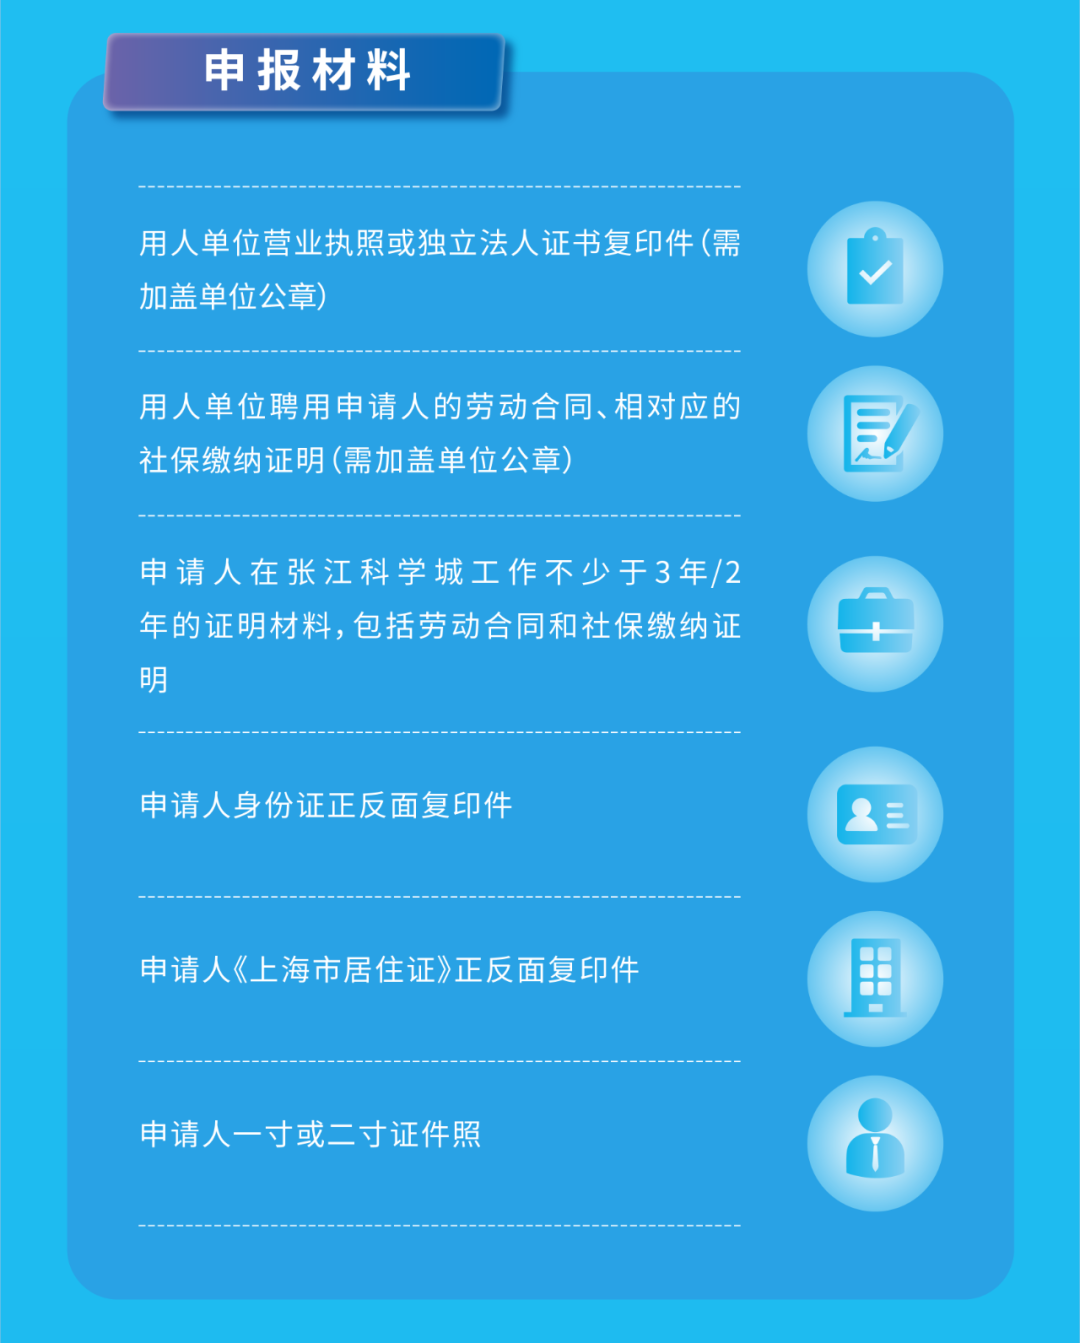 官方发布!上海居转户由7年缩短至5年或3年